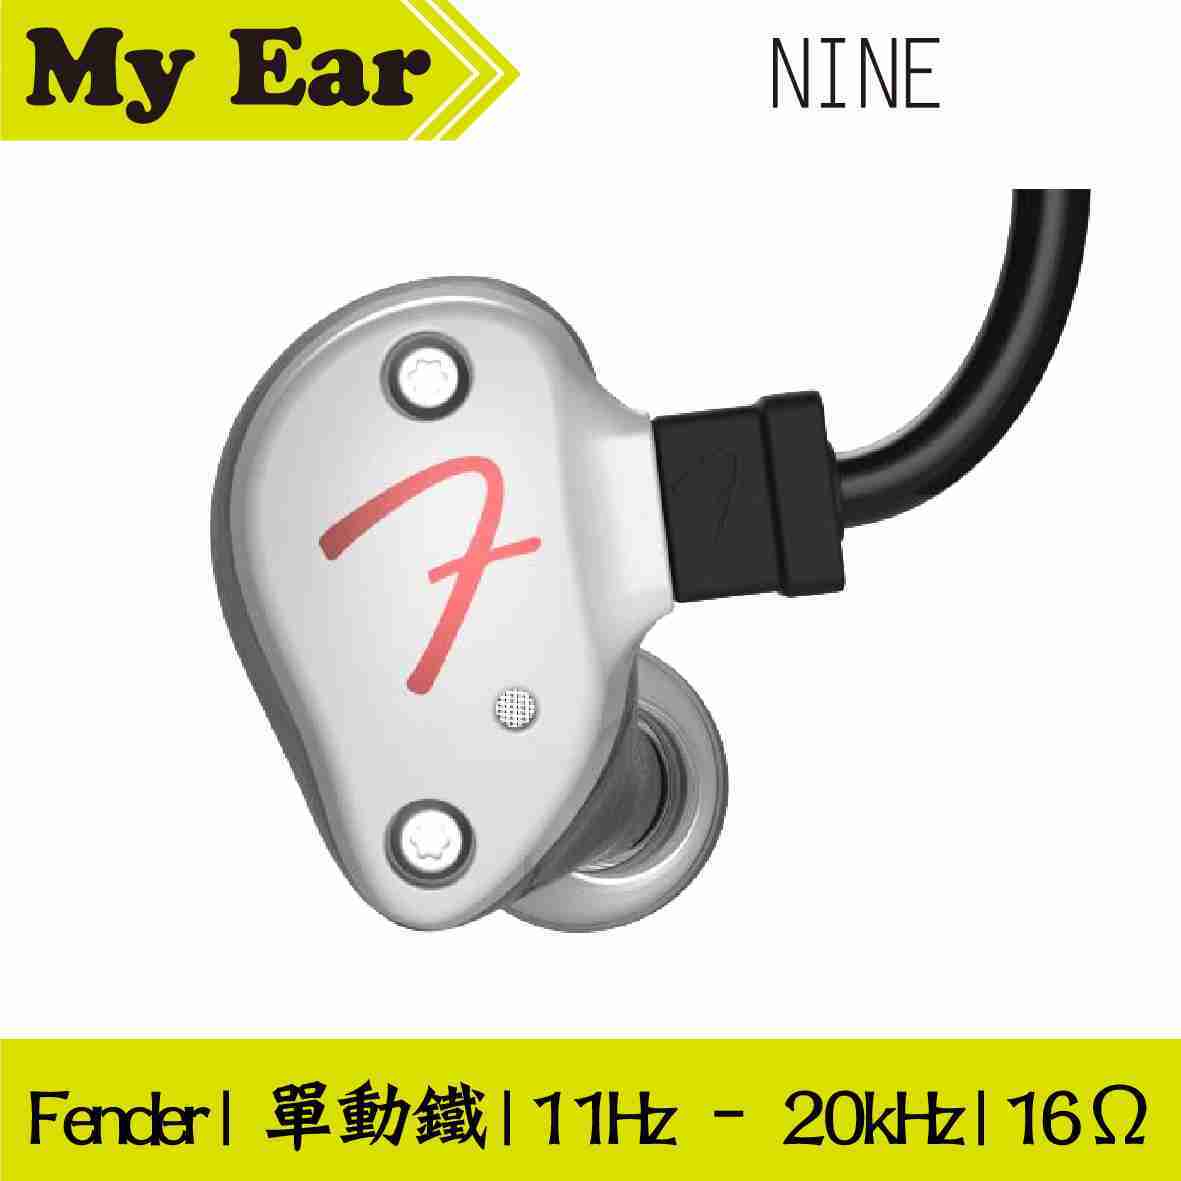 Fender NINE 珍珠白 耳道式 監聽 耳機 Pro IEM | My Ear耳機專門店